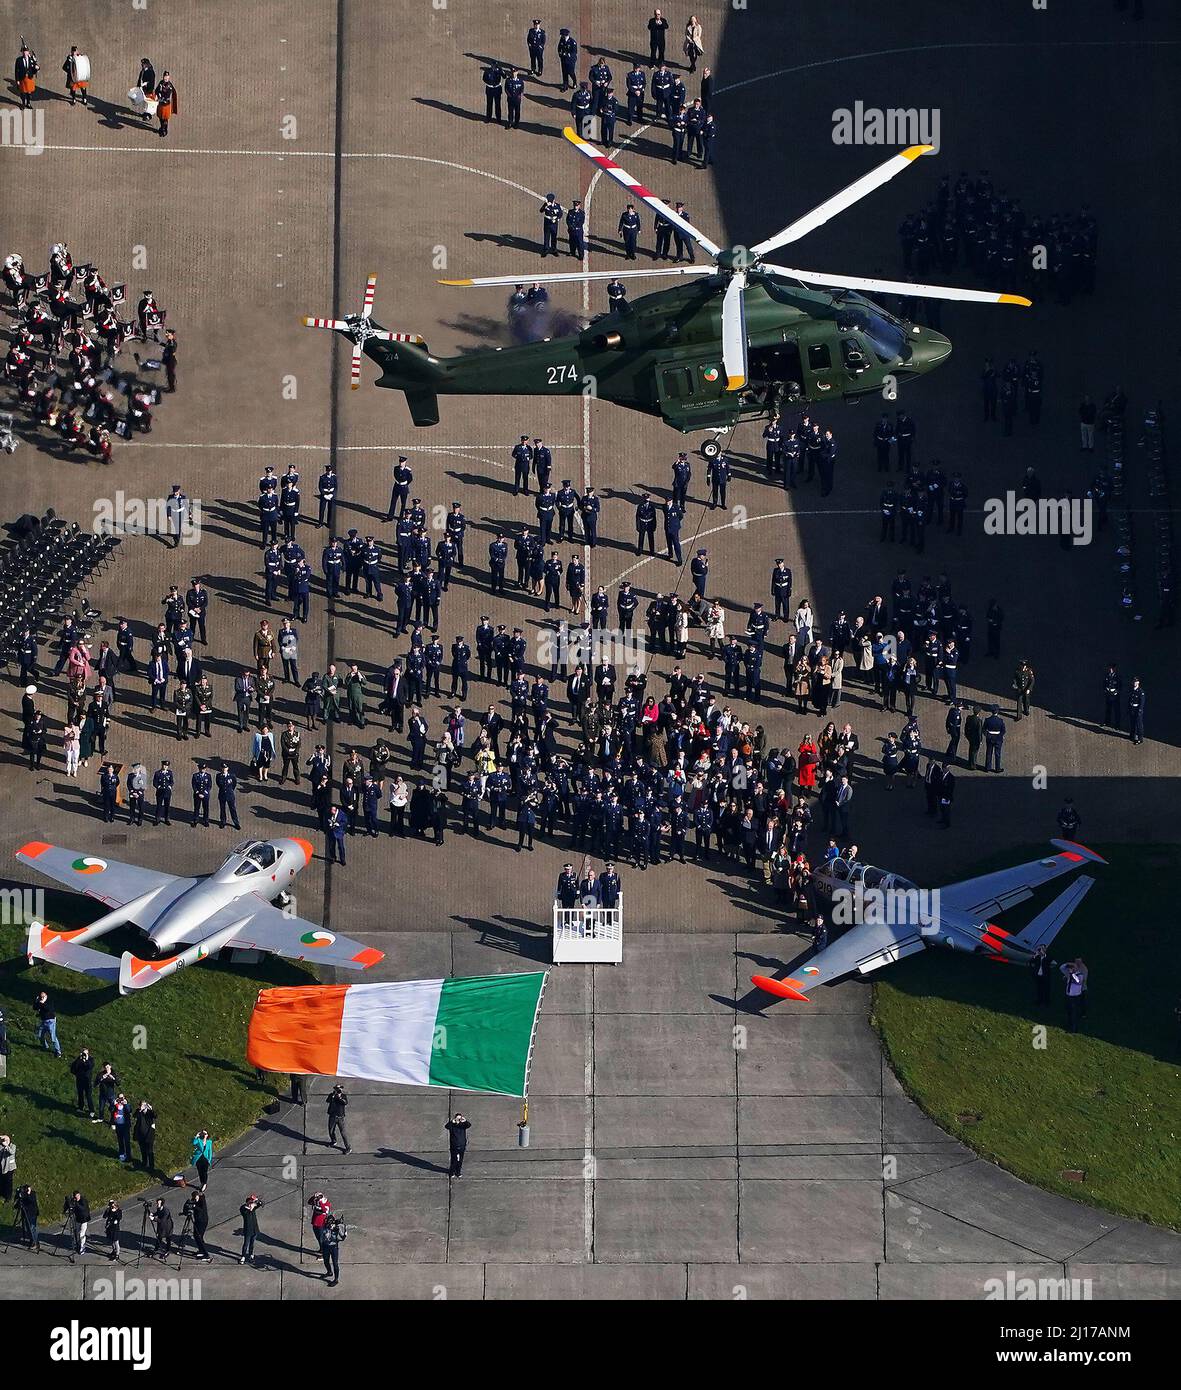 Ein Hubschrauber aus dem Jahr AW139, der die Tricolor fliegt, führt während einer Zeremonie im Casement Aerodrome, Baldonnel, Co. Dublin, anlässlich des 100.-jährigen Bestehens der Irish Air Corp. Einen Flypast durch. Bilddatum: Mittwoch, 23. März 2022. Stockfoto